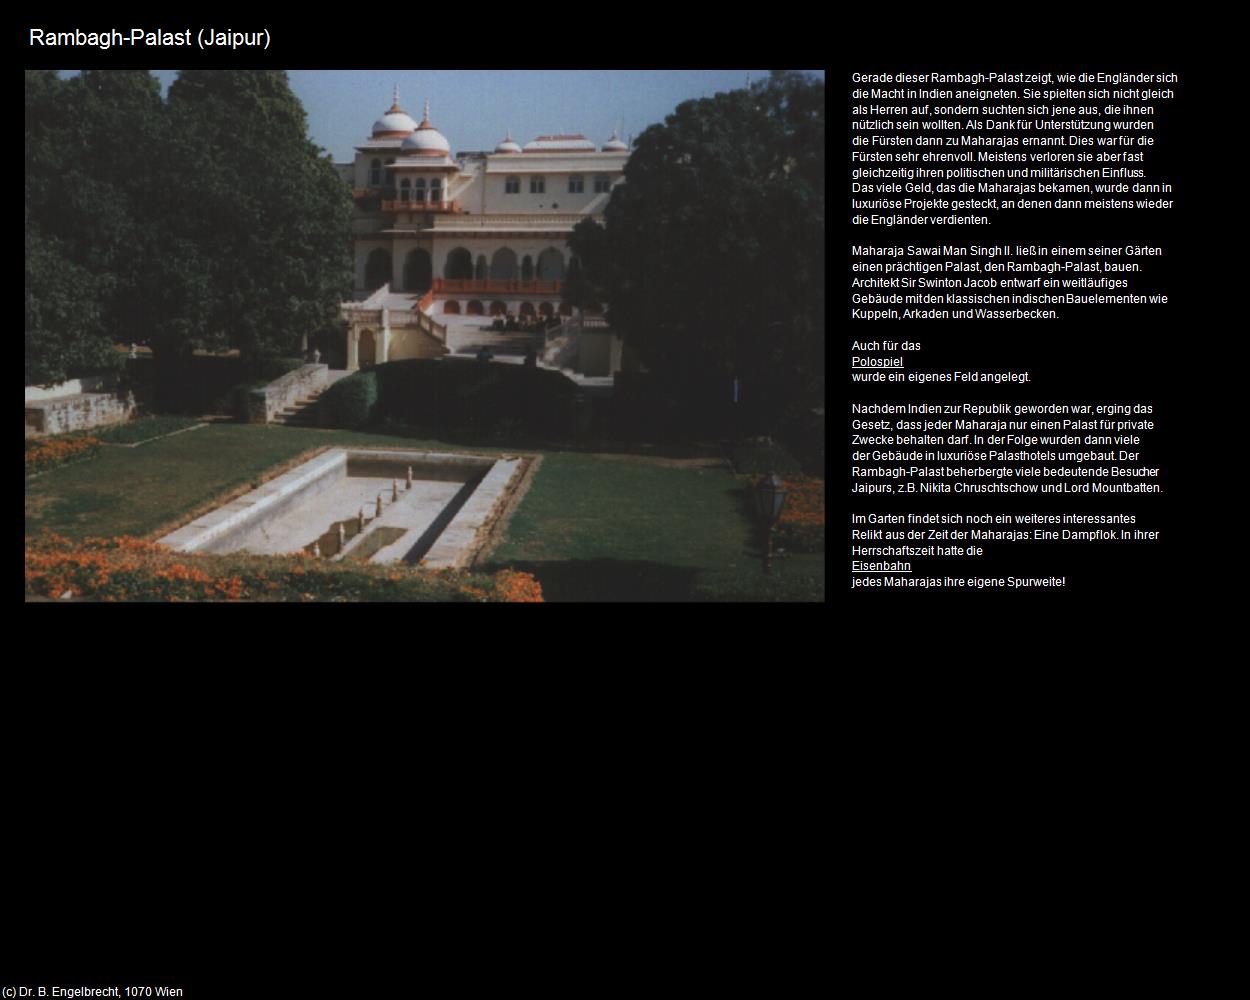 Rambagh-Palast (Jaipur) in Rajasthan - das Land der Könige(c)B.Engelbrecht